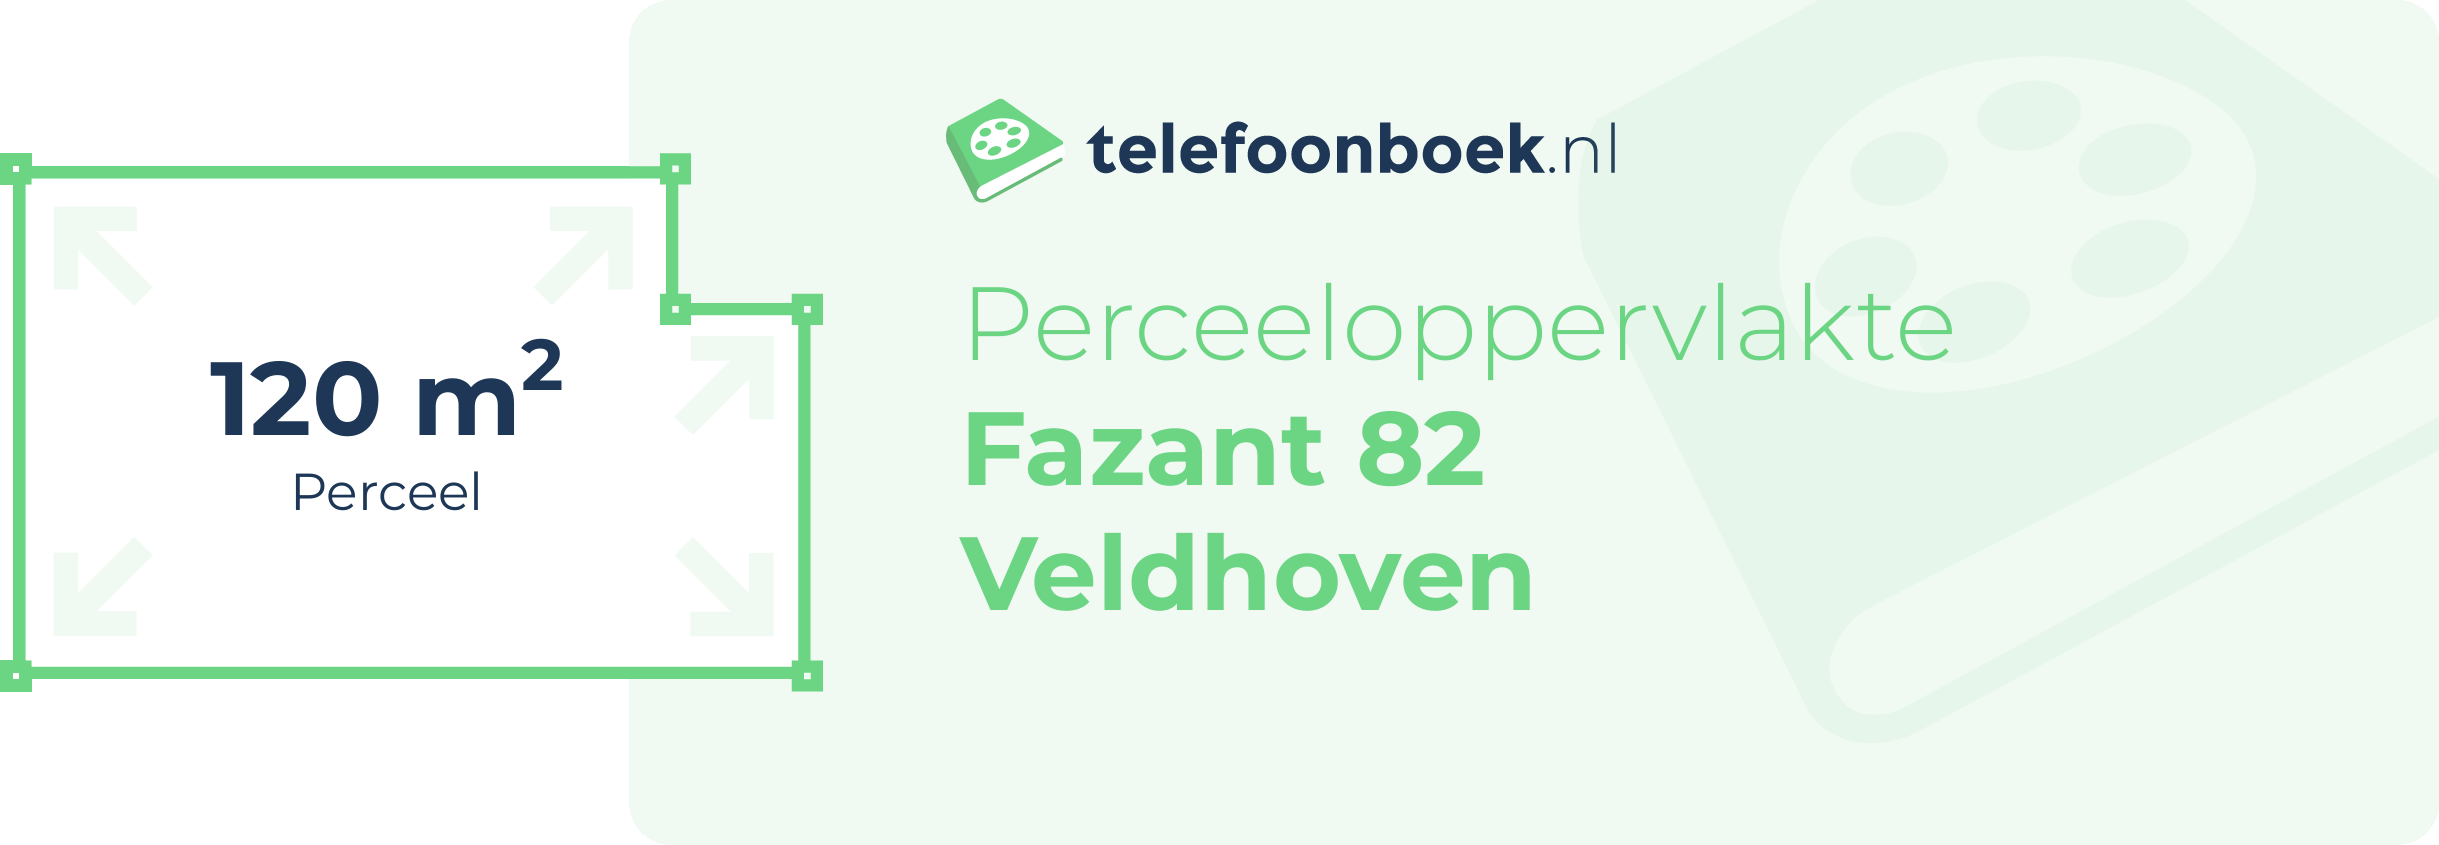 Perceeloppervlakte Fazant 82 Veldhoven